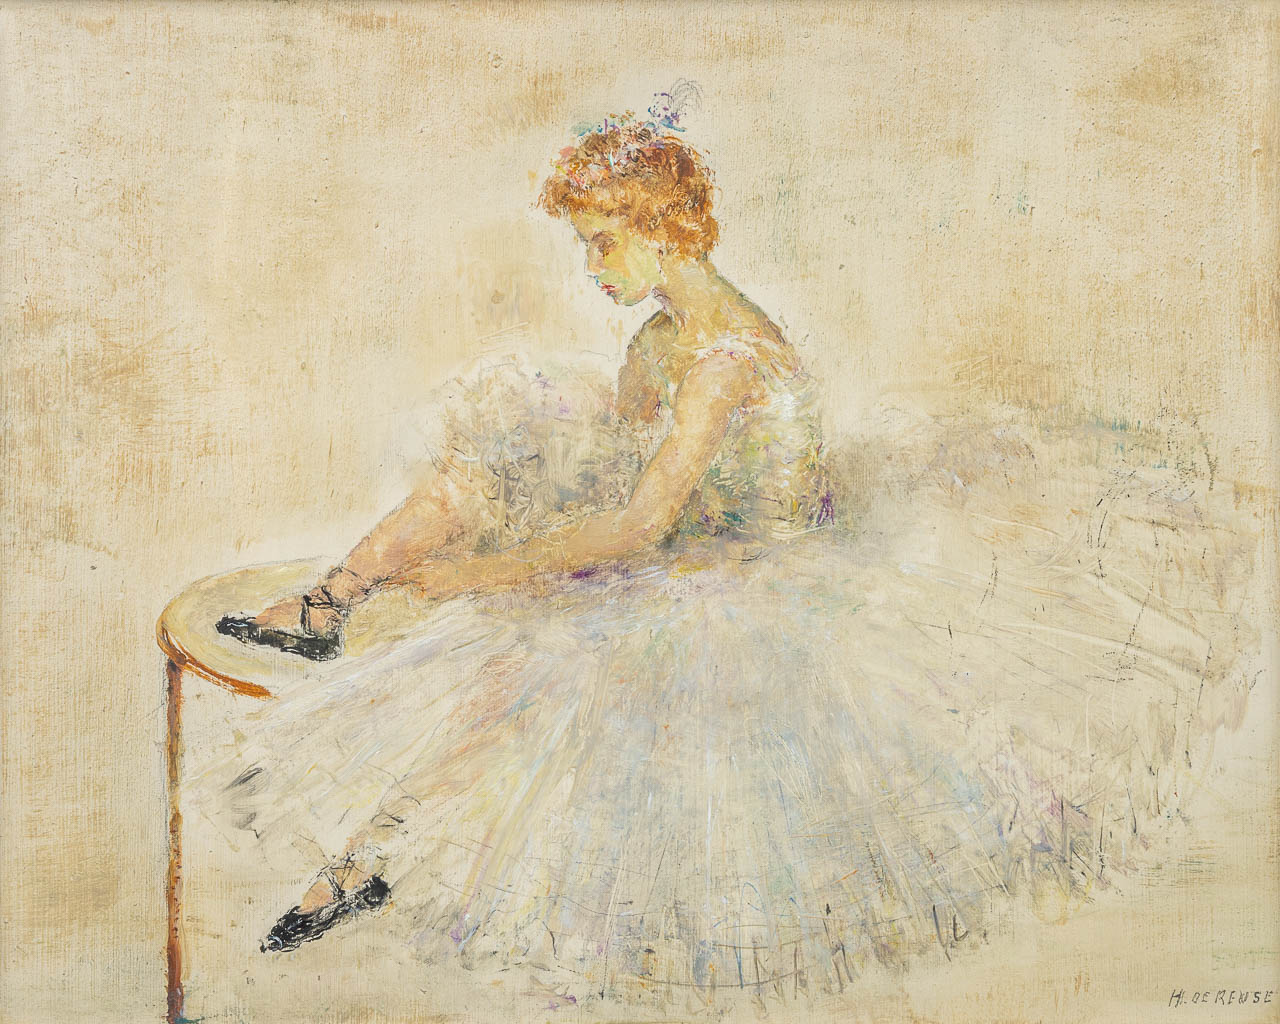 Hélène DE REUSE (1892-1979) 'Ballerina' a painting, oil on panel. (34 x 27 cm)